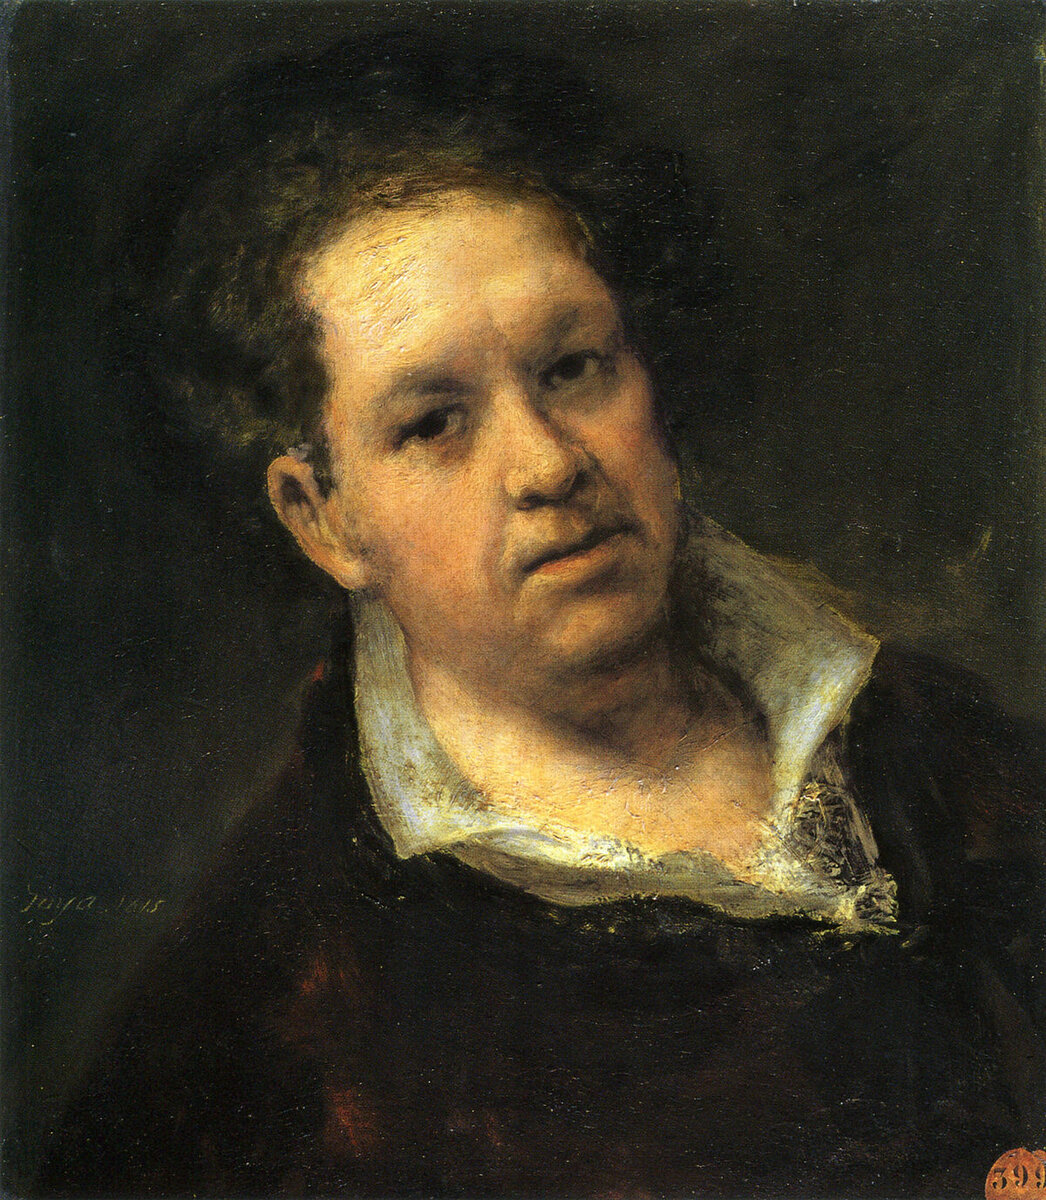 Франческо Гойя, автопортрет. Изображение: wikimedia.org